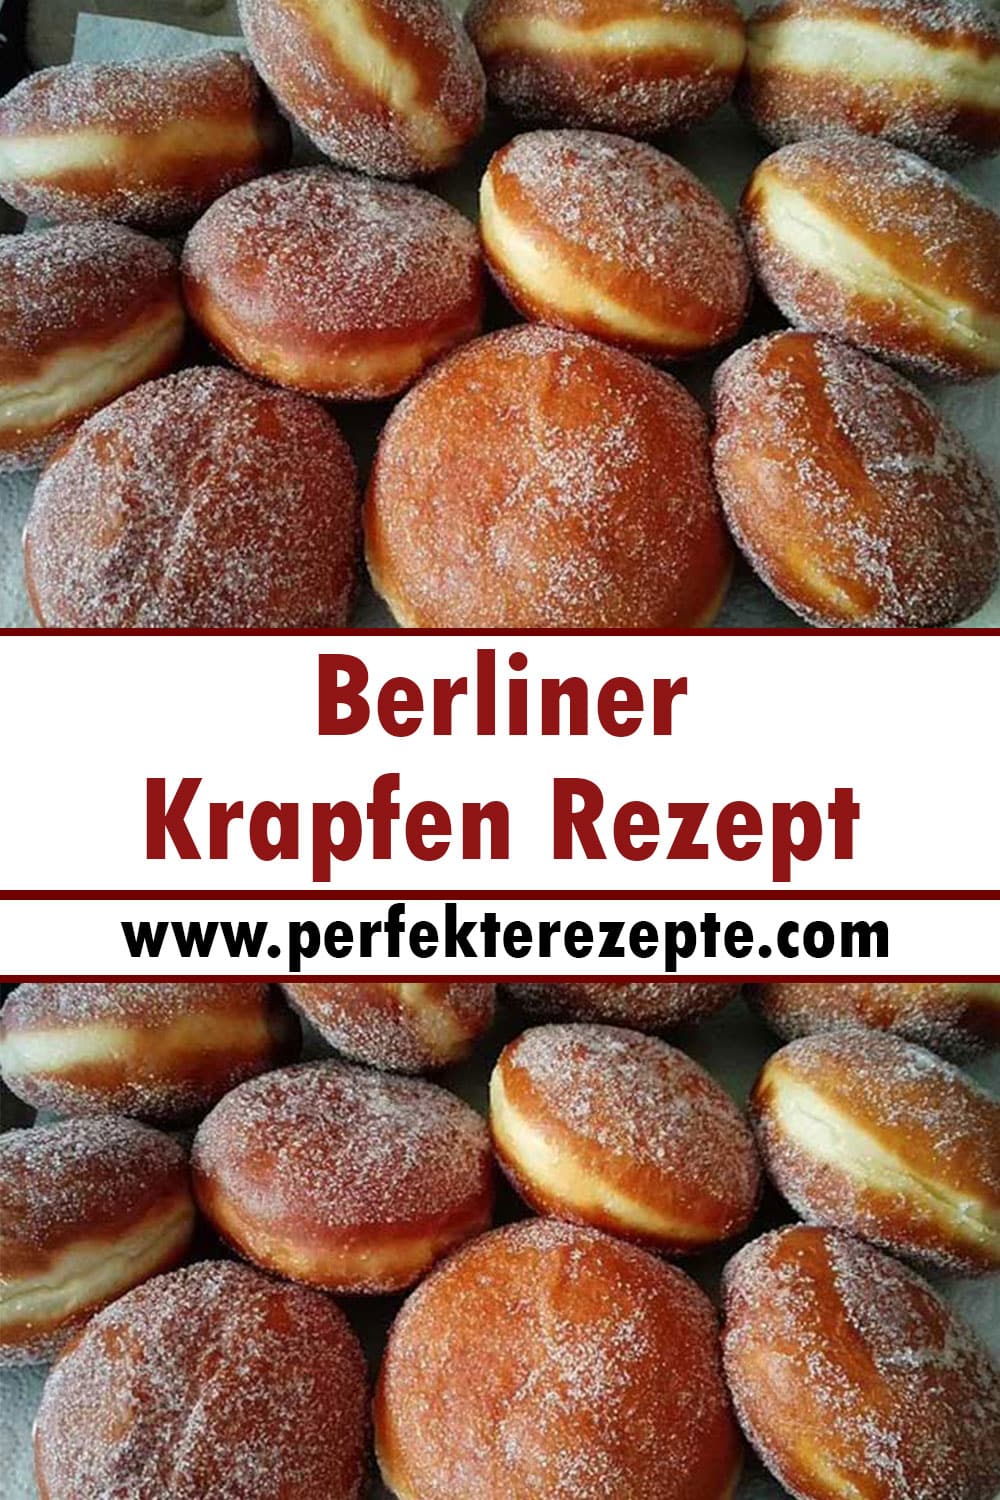 Berliner Krapfen Rezept